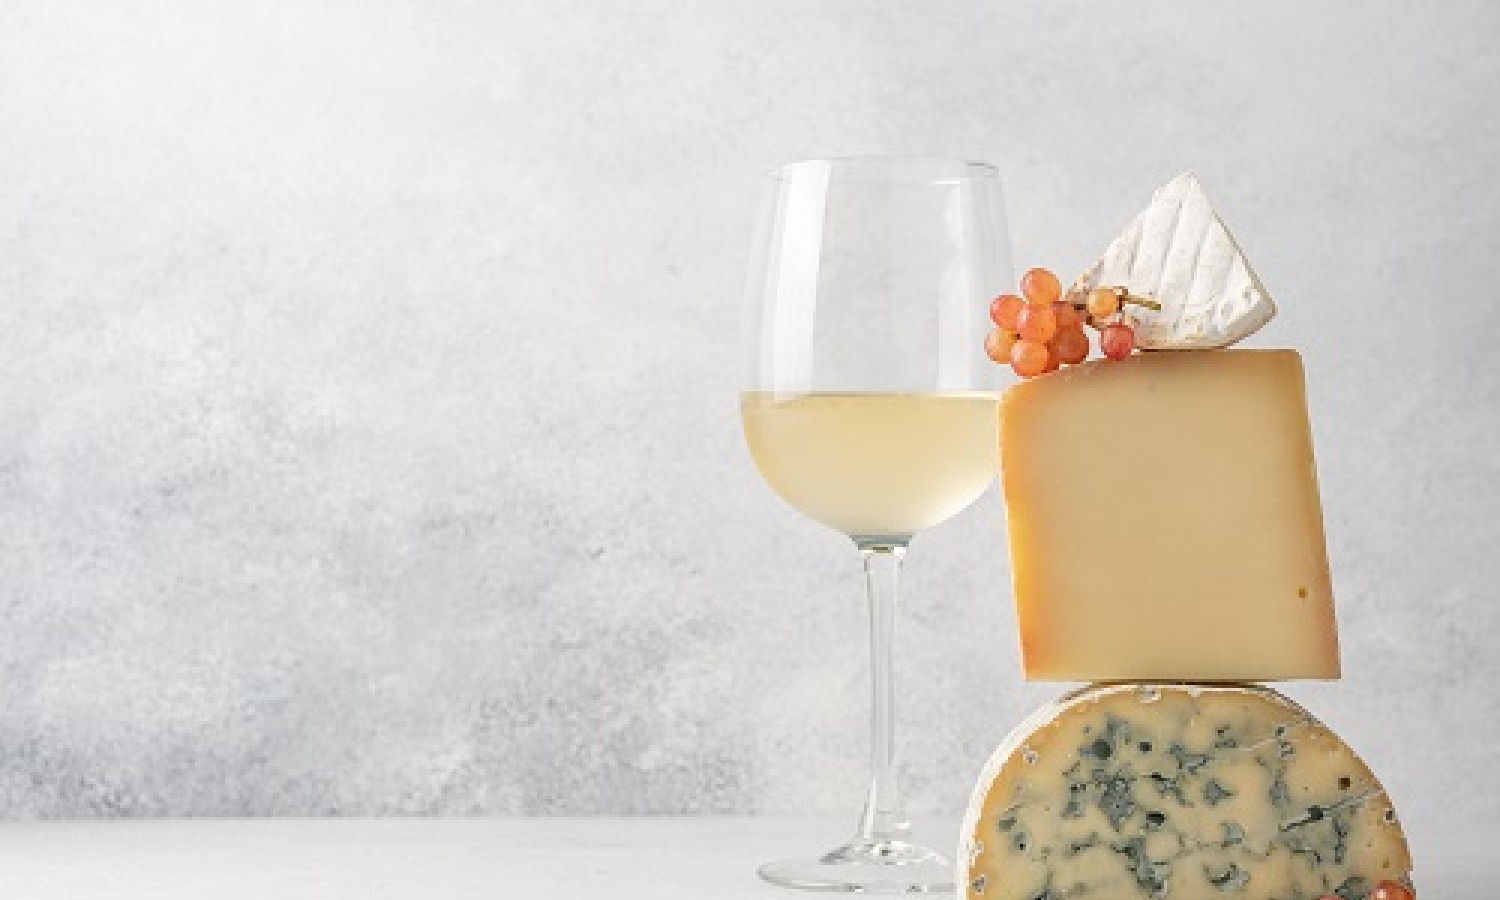 Uno studio sugli abbinamenti tra vini francesi e formaggi